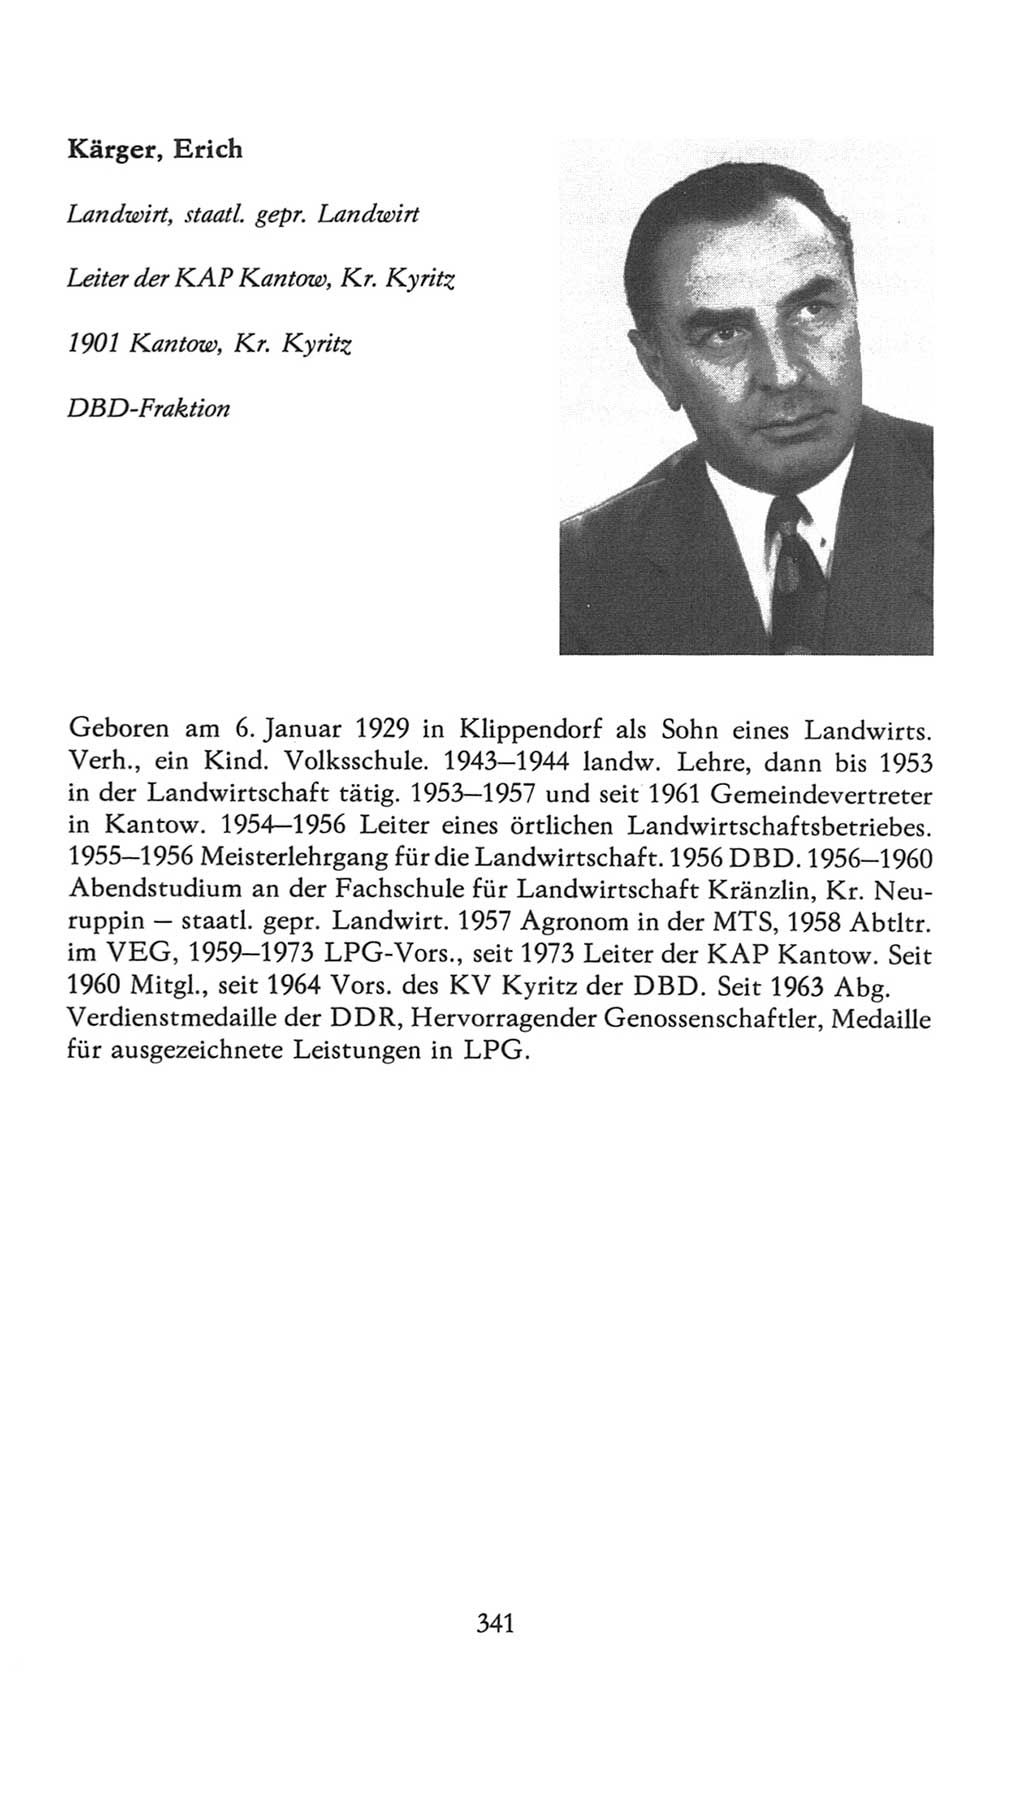 Volkskammer (VK) der Deutschen Demokratischen Republik (DDR), 7. Wahlperiode 1976-1981, Seite 341 (VK. DDR 7. WP. 1976-1981, S. 341)